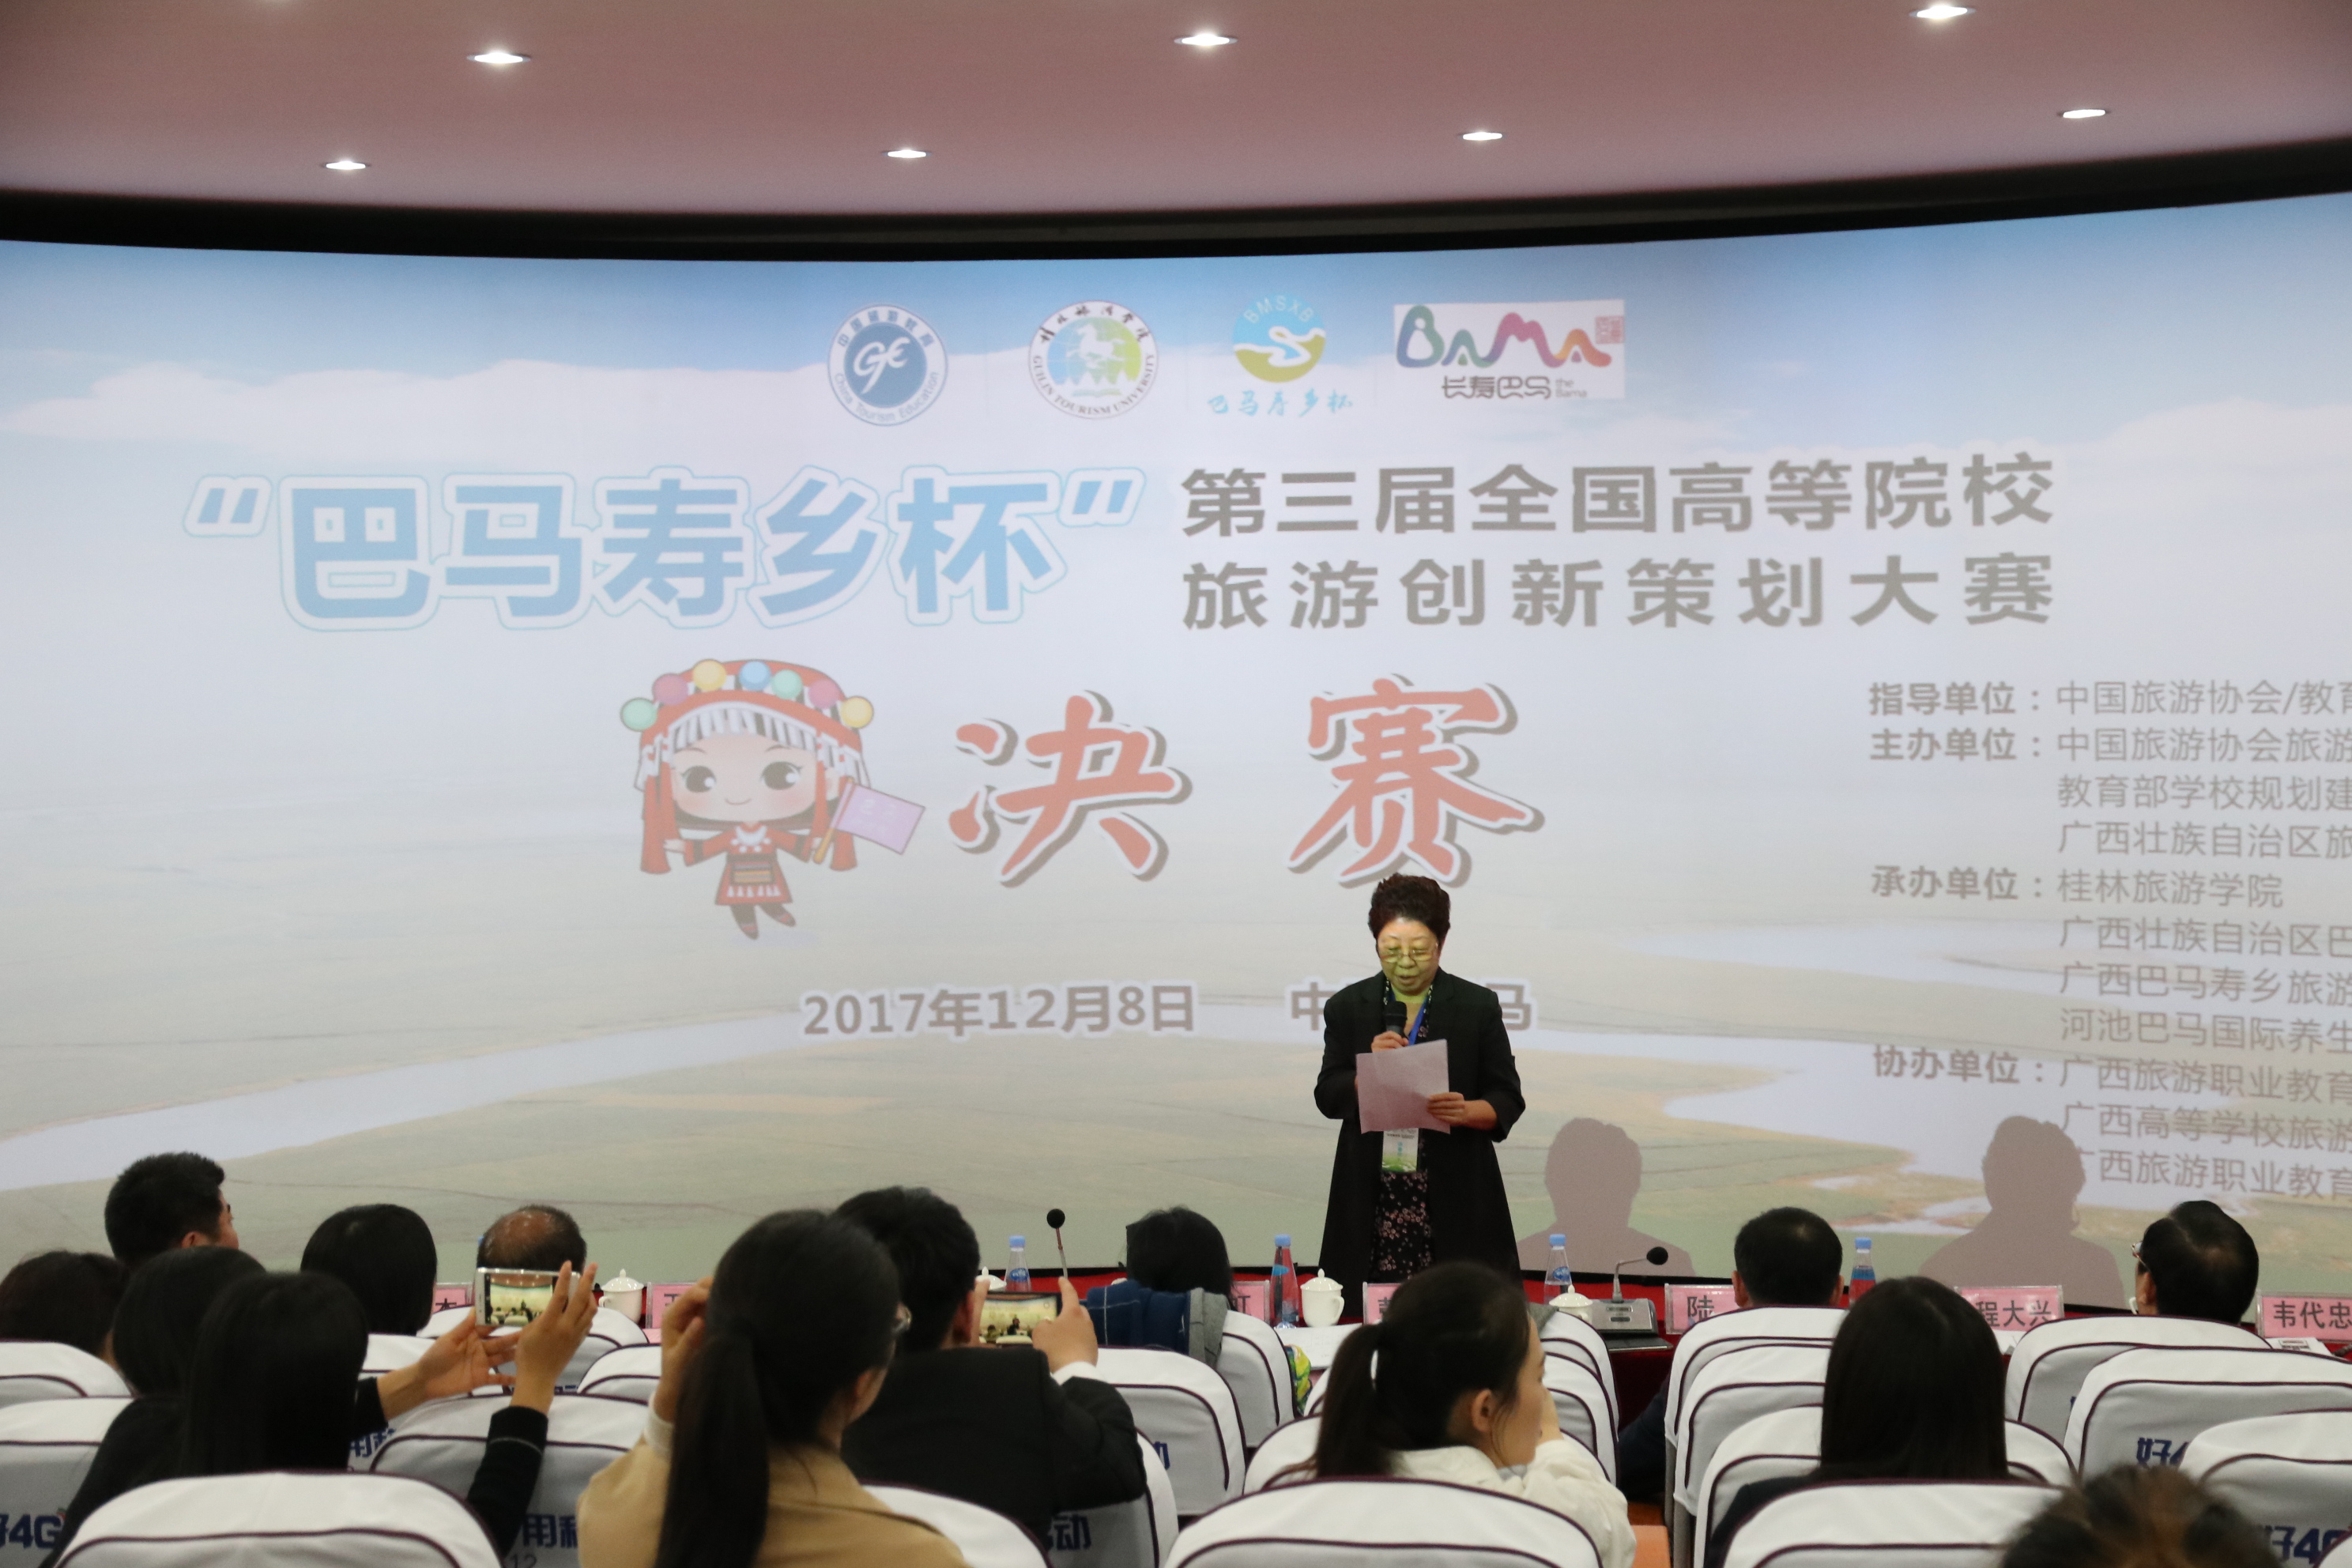 中国旅游协会旅游教育分会副秘书长、中山大学旅游学院教授彭青宣布获奖情况